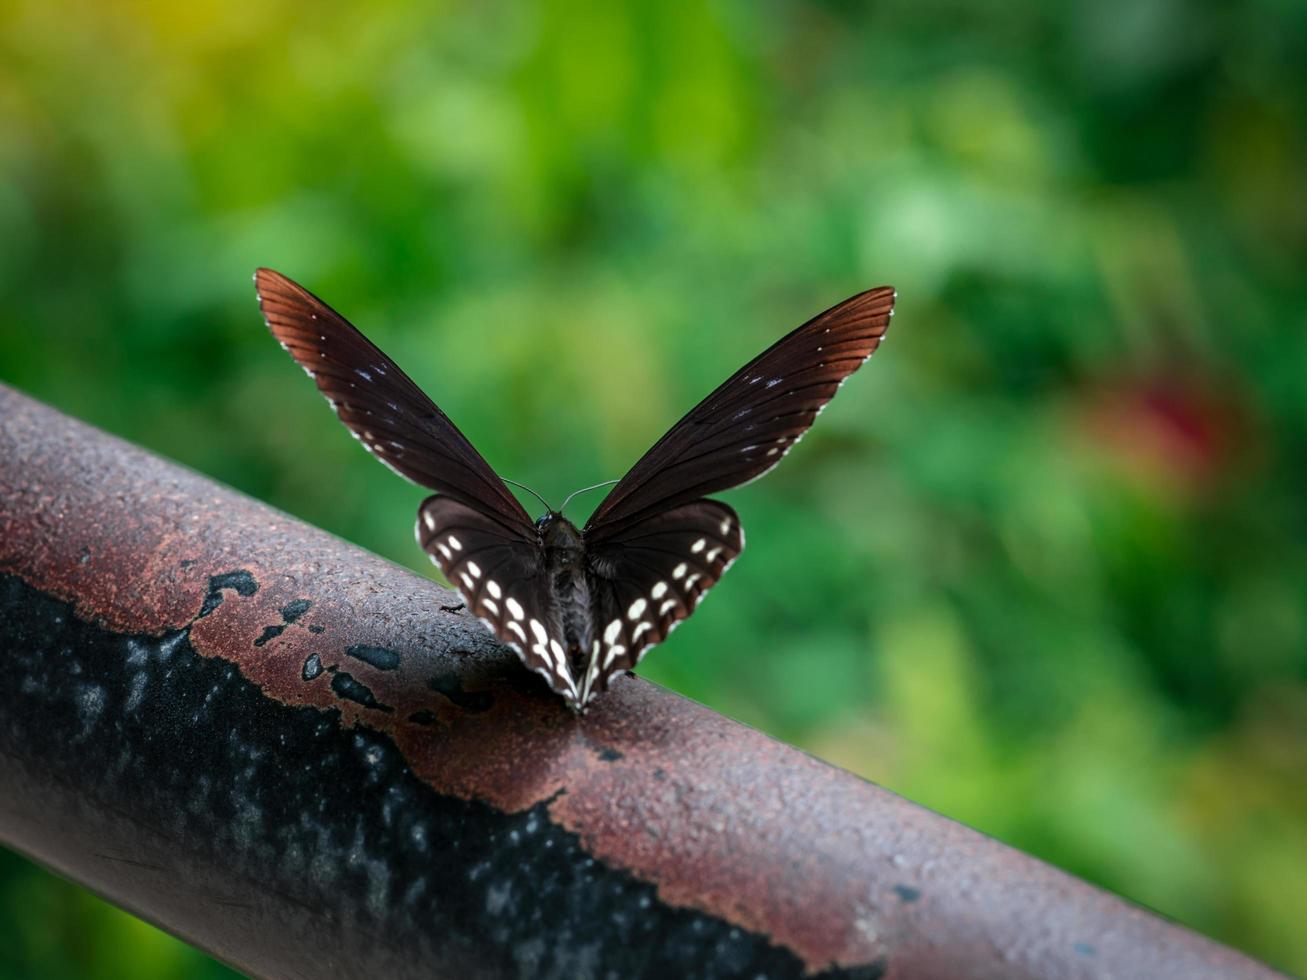 mariposa negra en la vieja barra de hierro en el parque foto